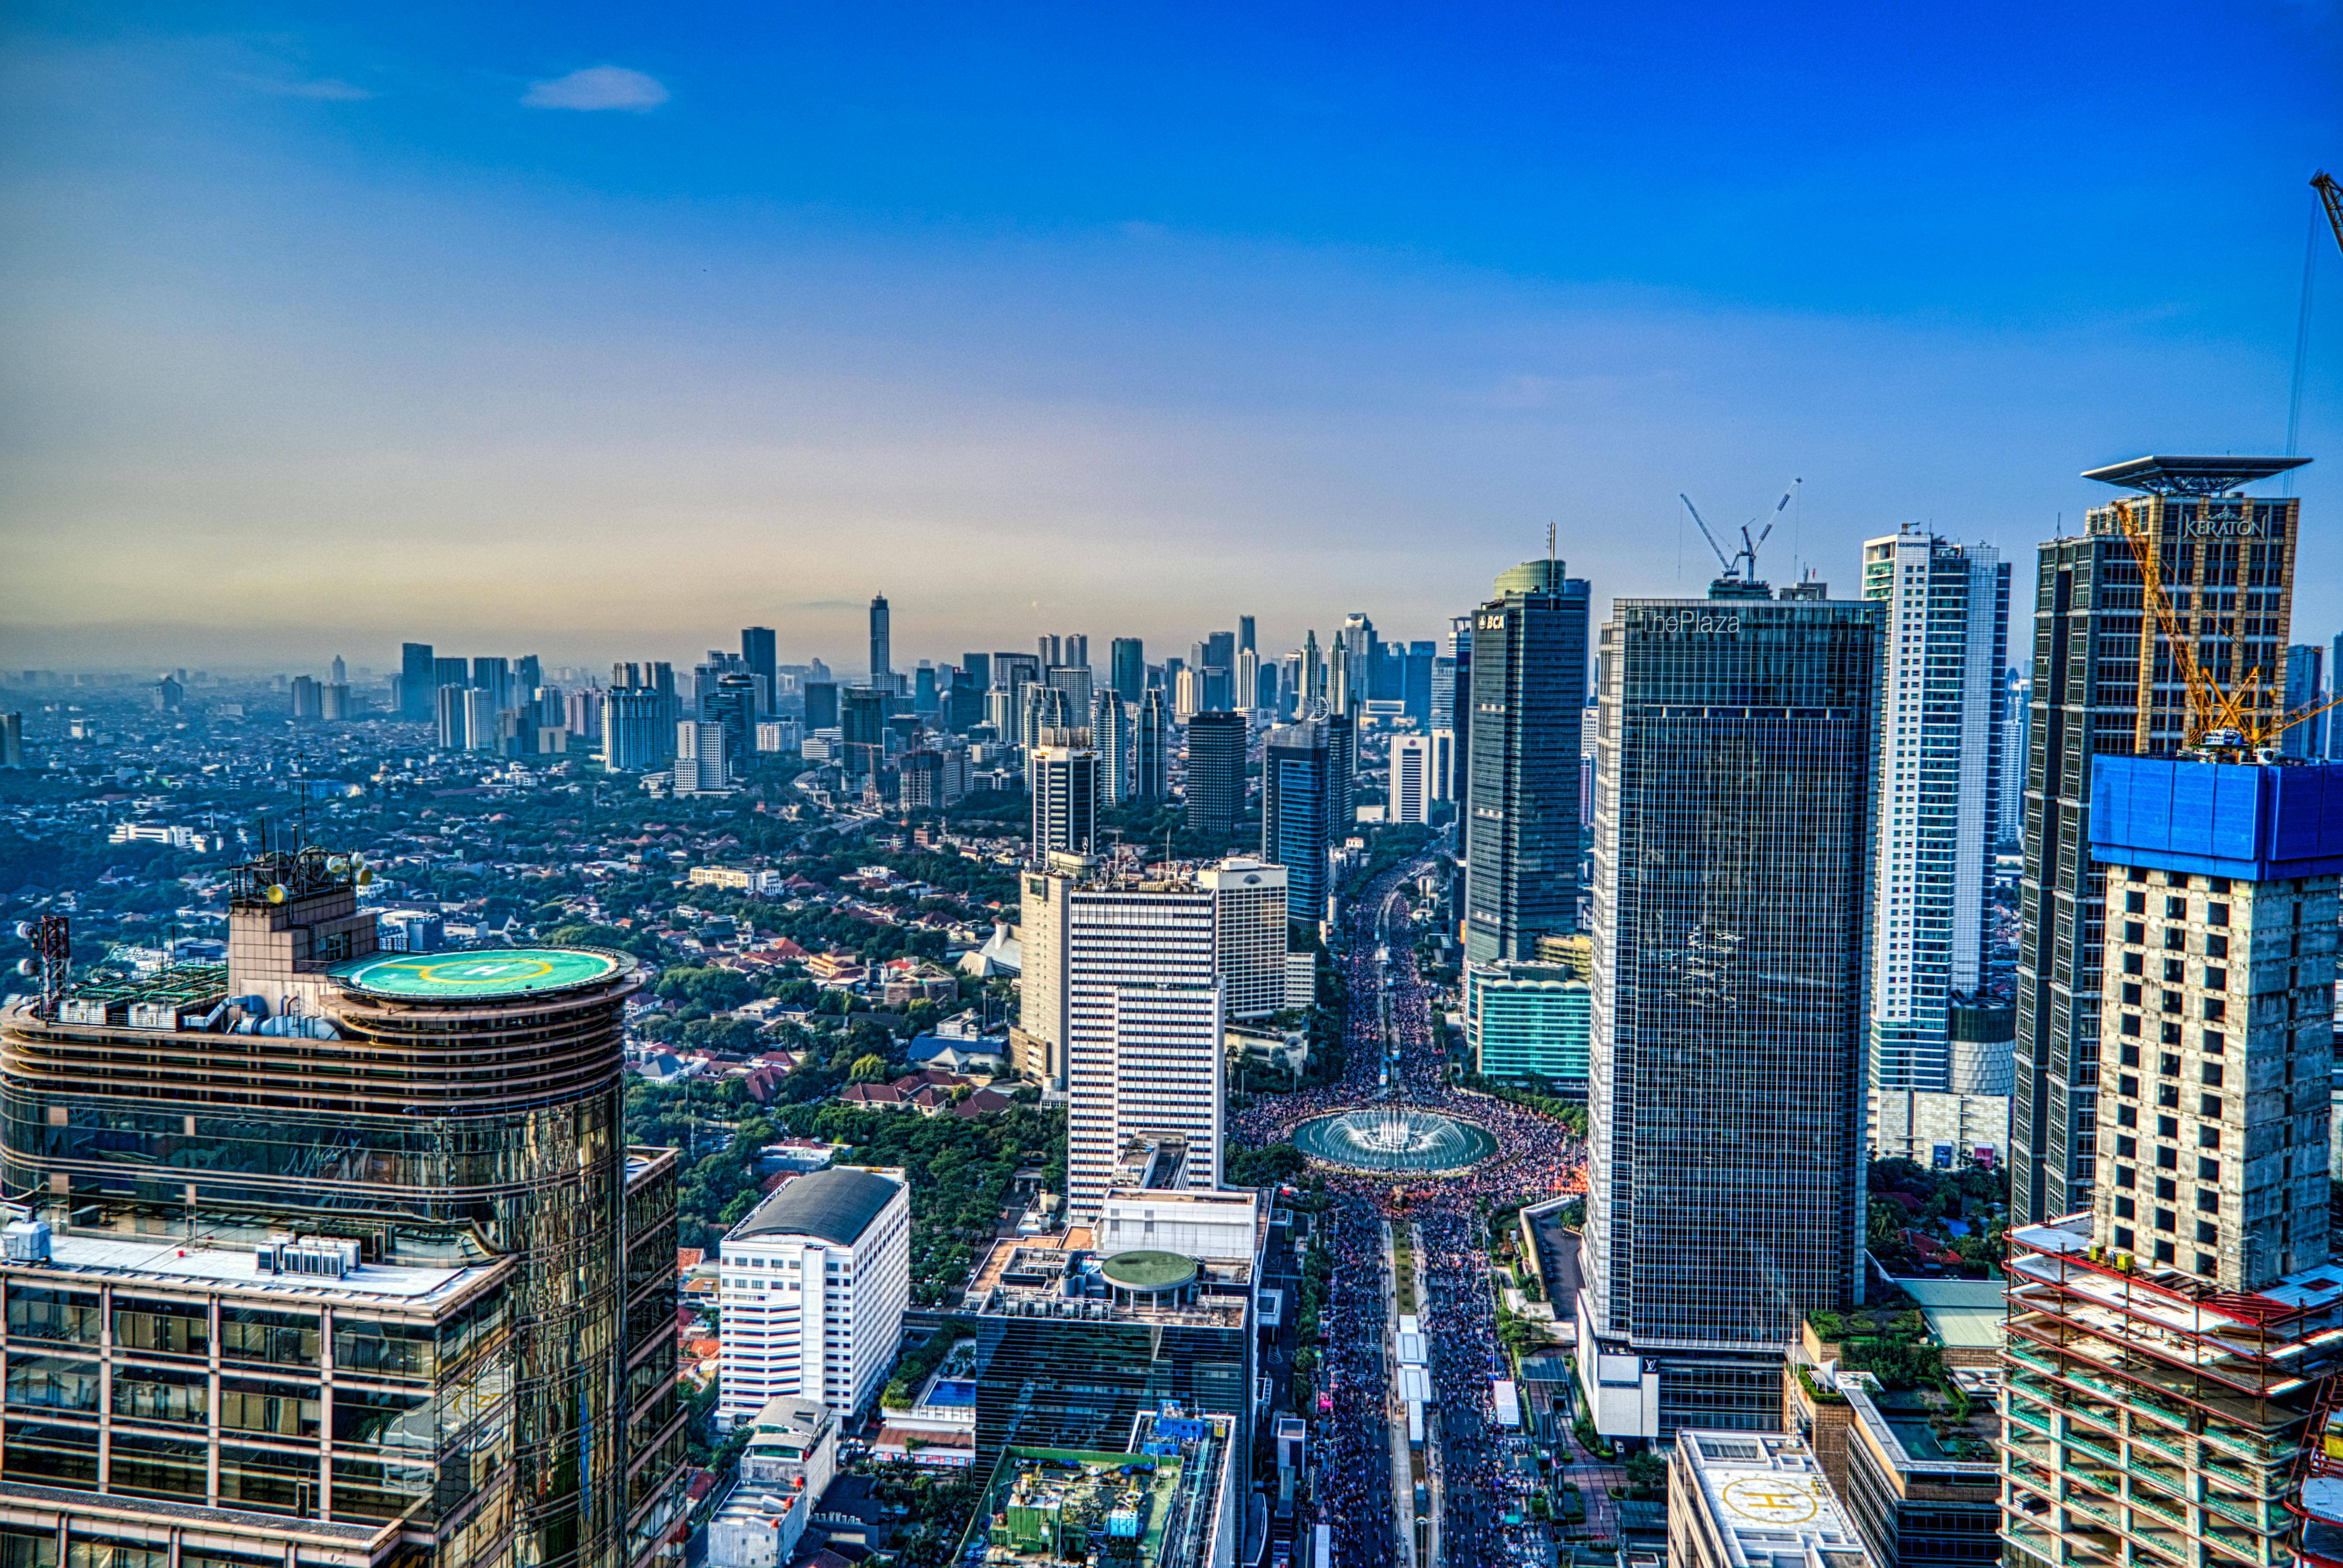 印度尼西亚一季度GDP增长了5.11%